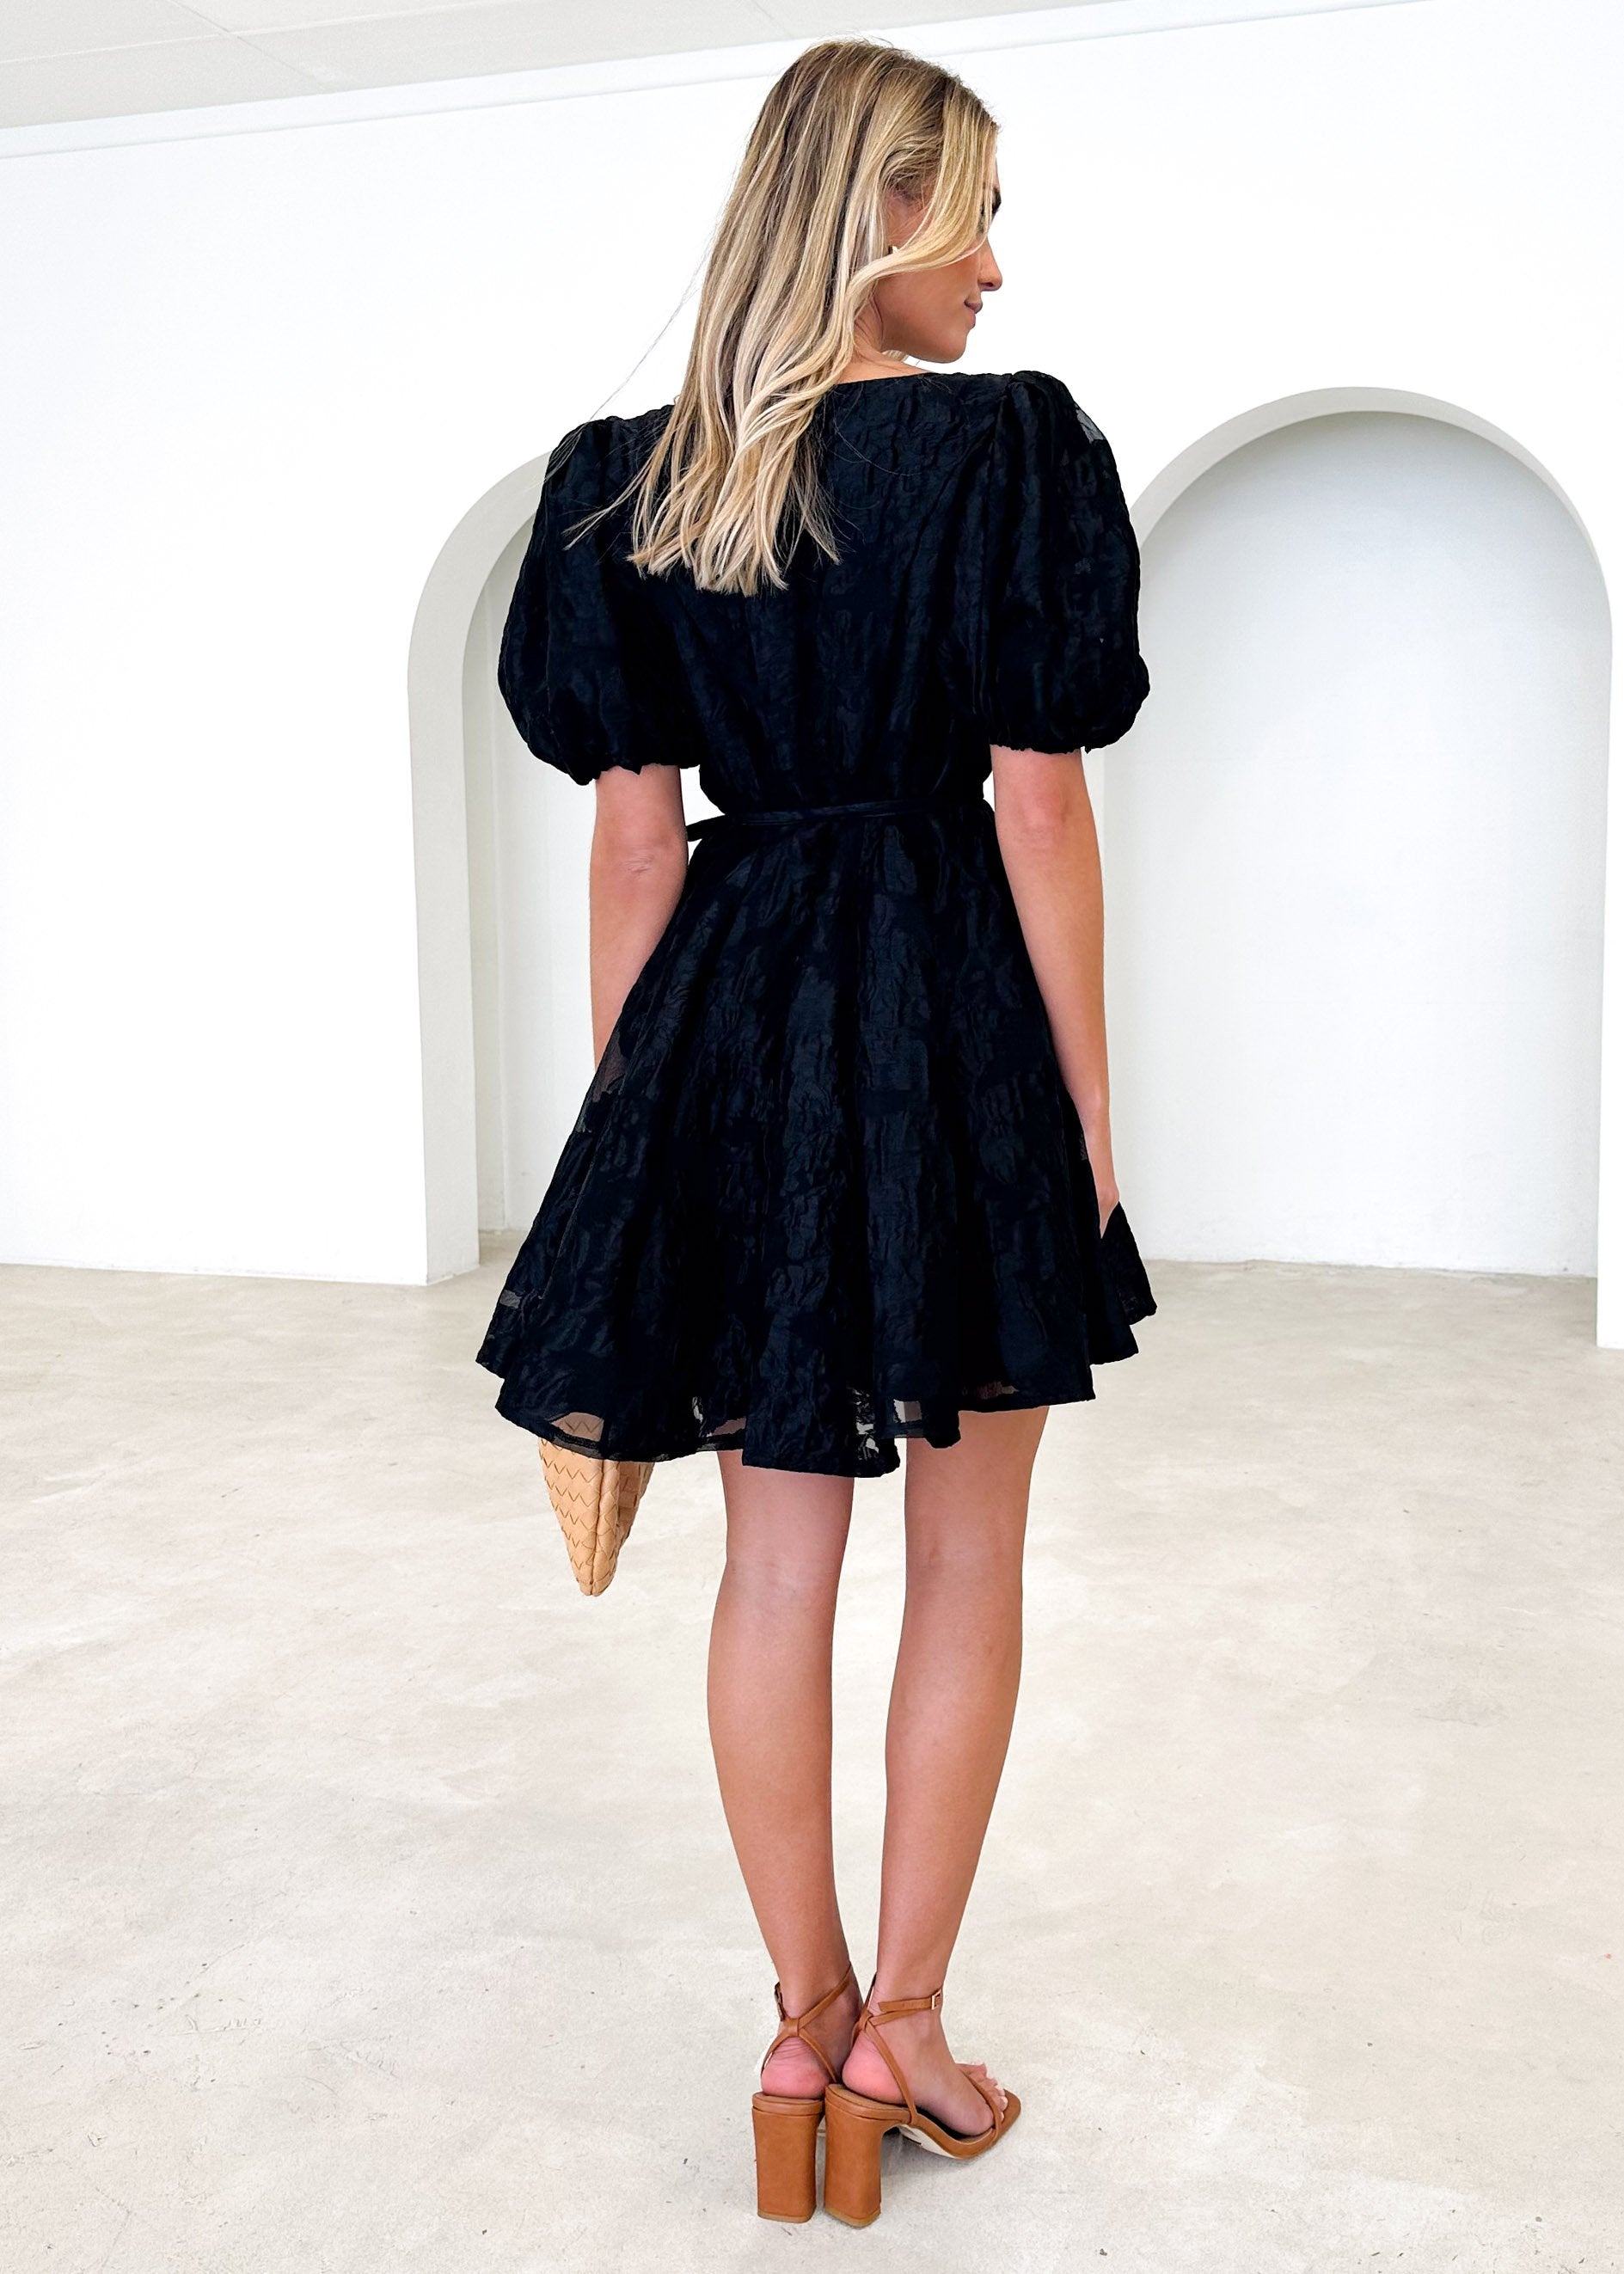 Laqueen Dress - Black